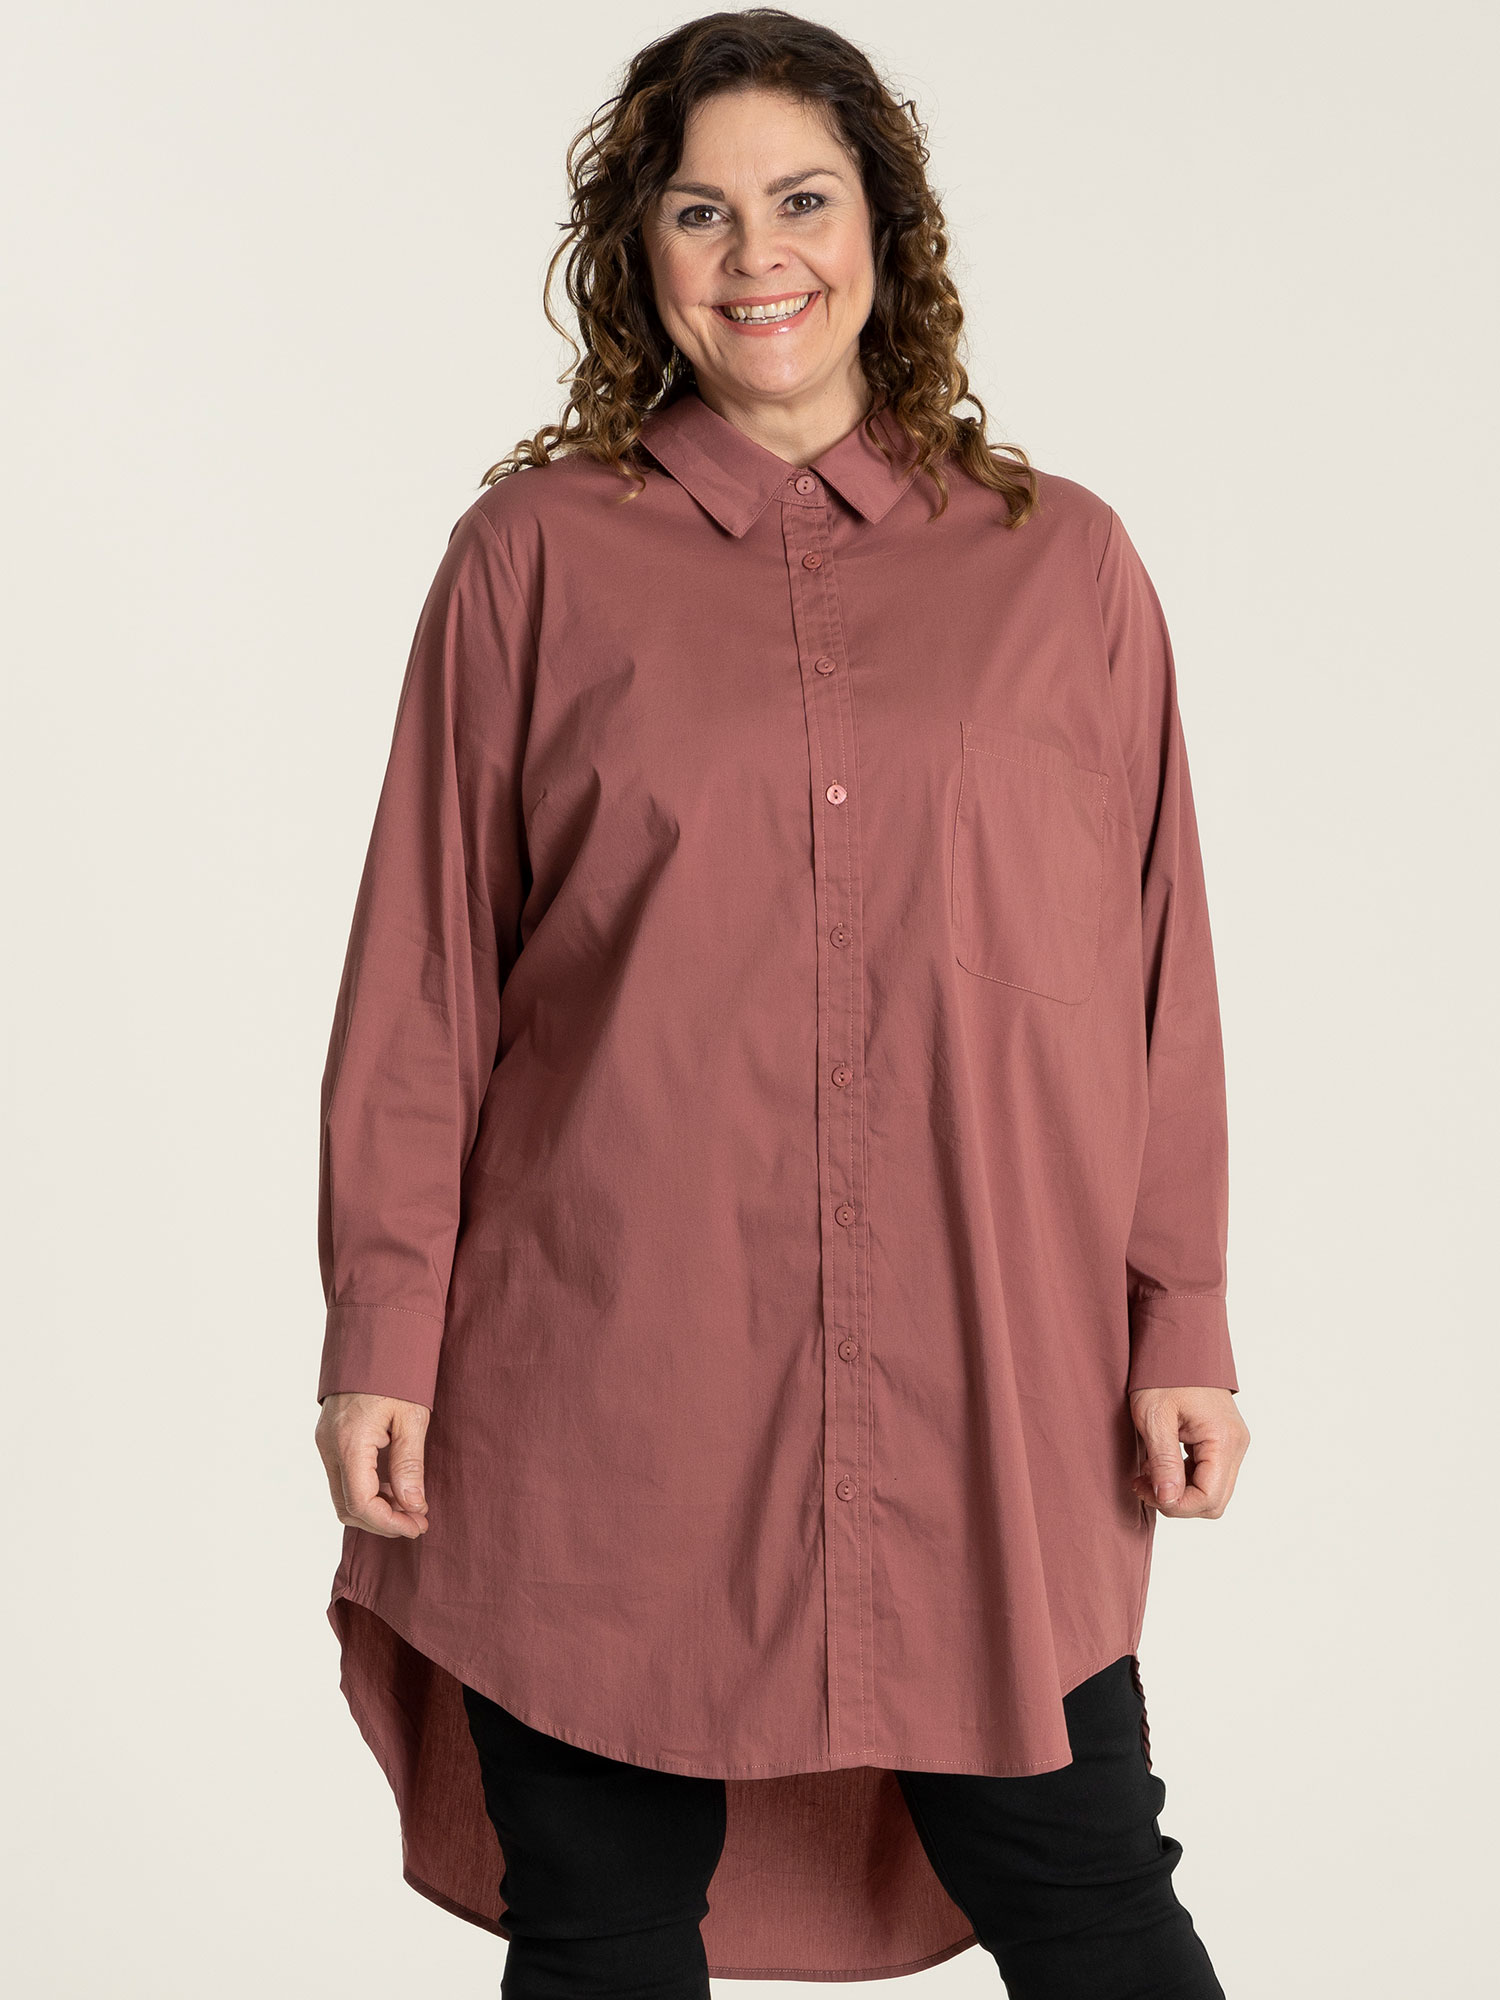 SUSANNE - Rosa bomulds skjorte tunika fra Gozzip